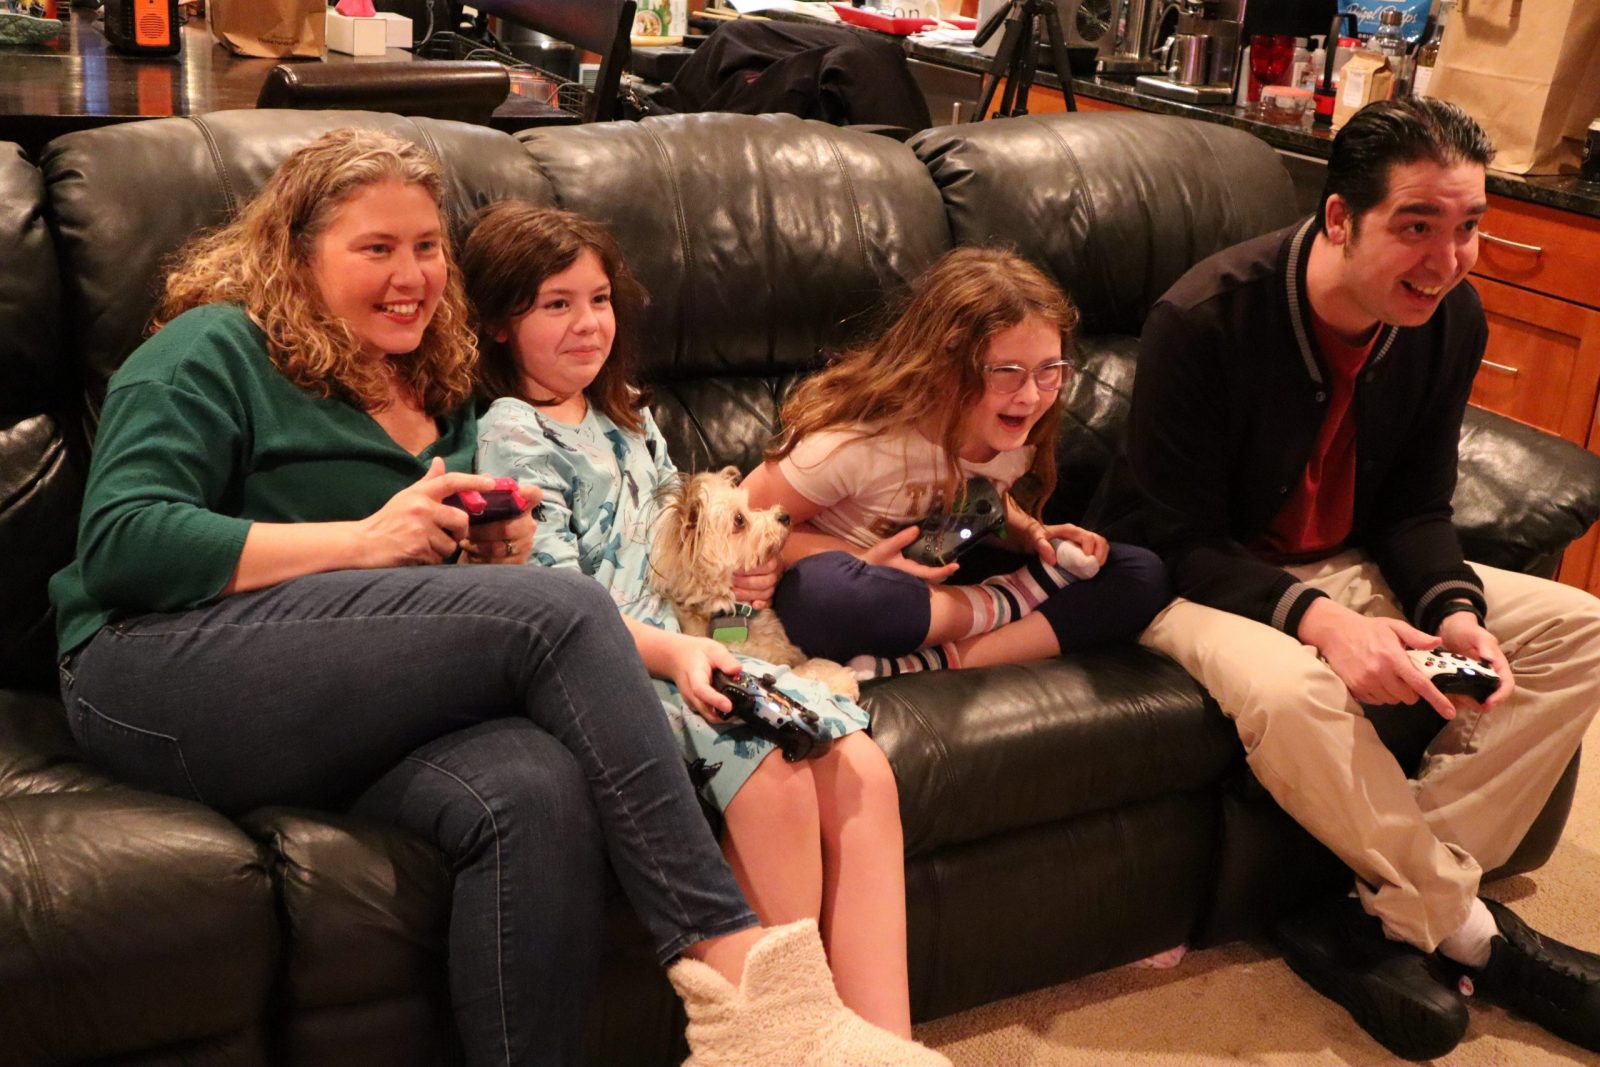 Кэти Стоун Перес и ее семья играют вместе на Xbox в ночь игры. (Фото Agatha Jensen)